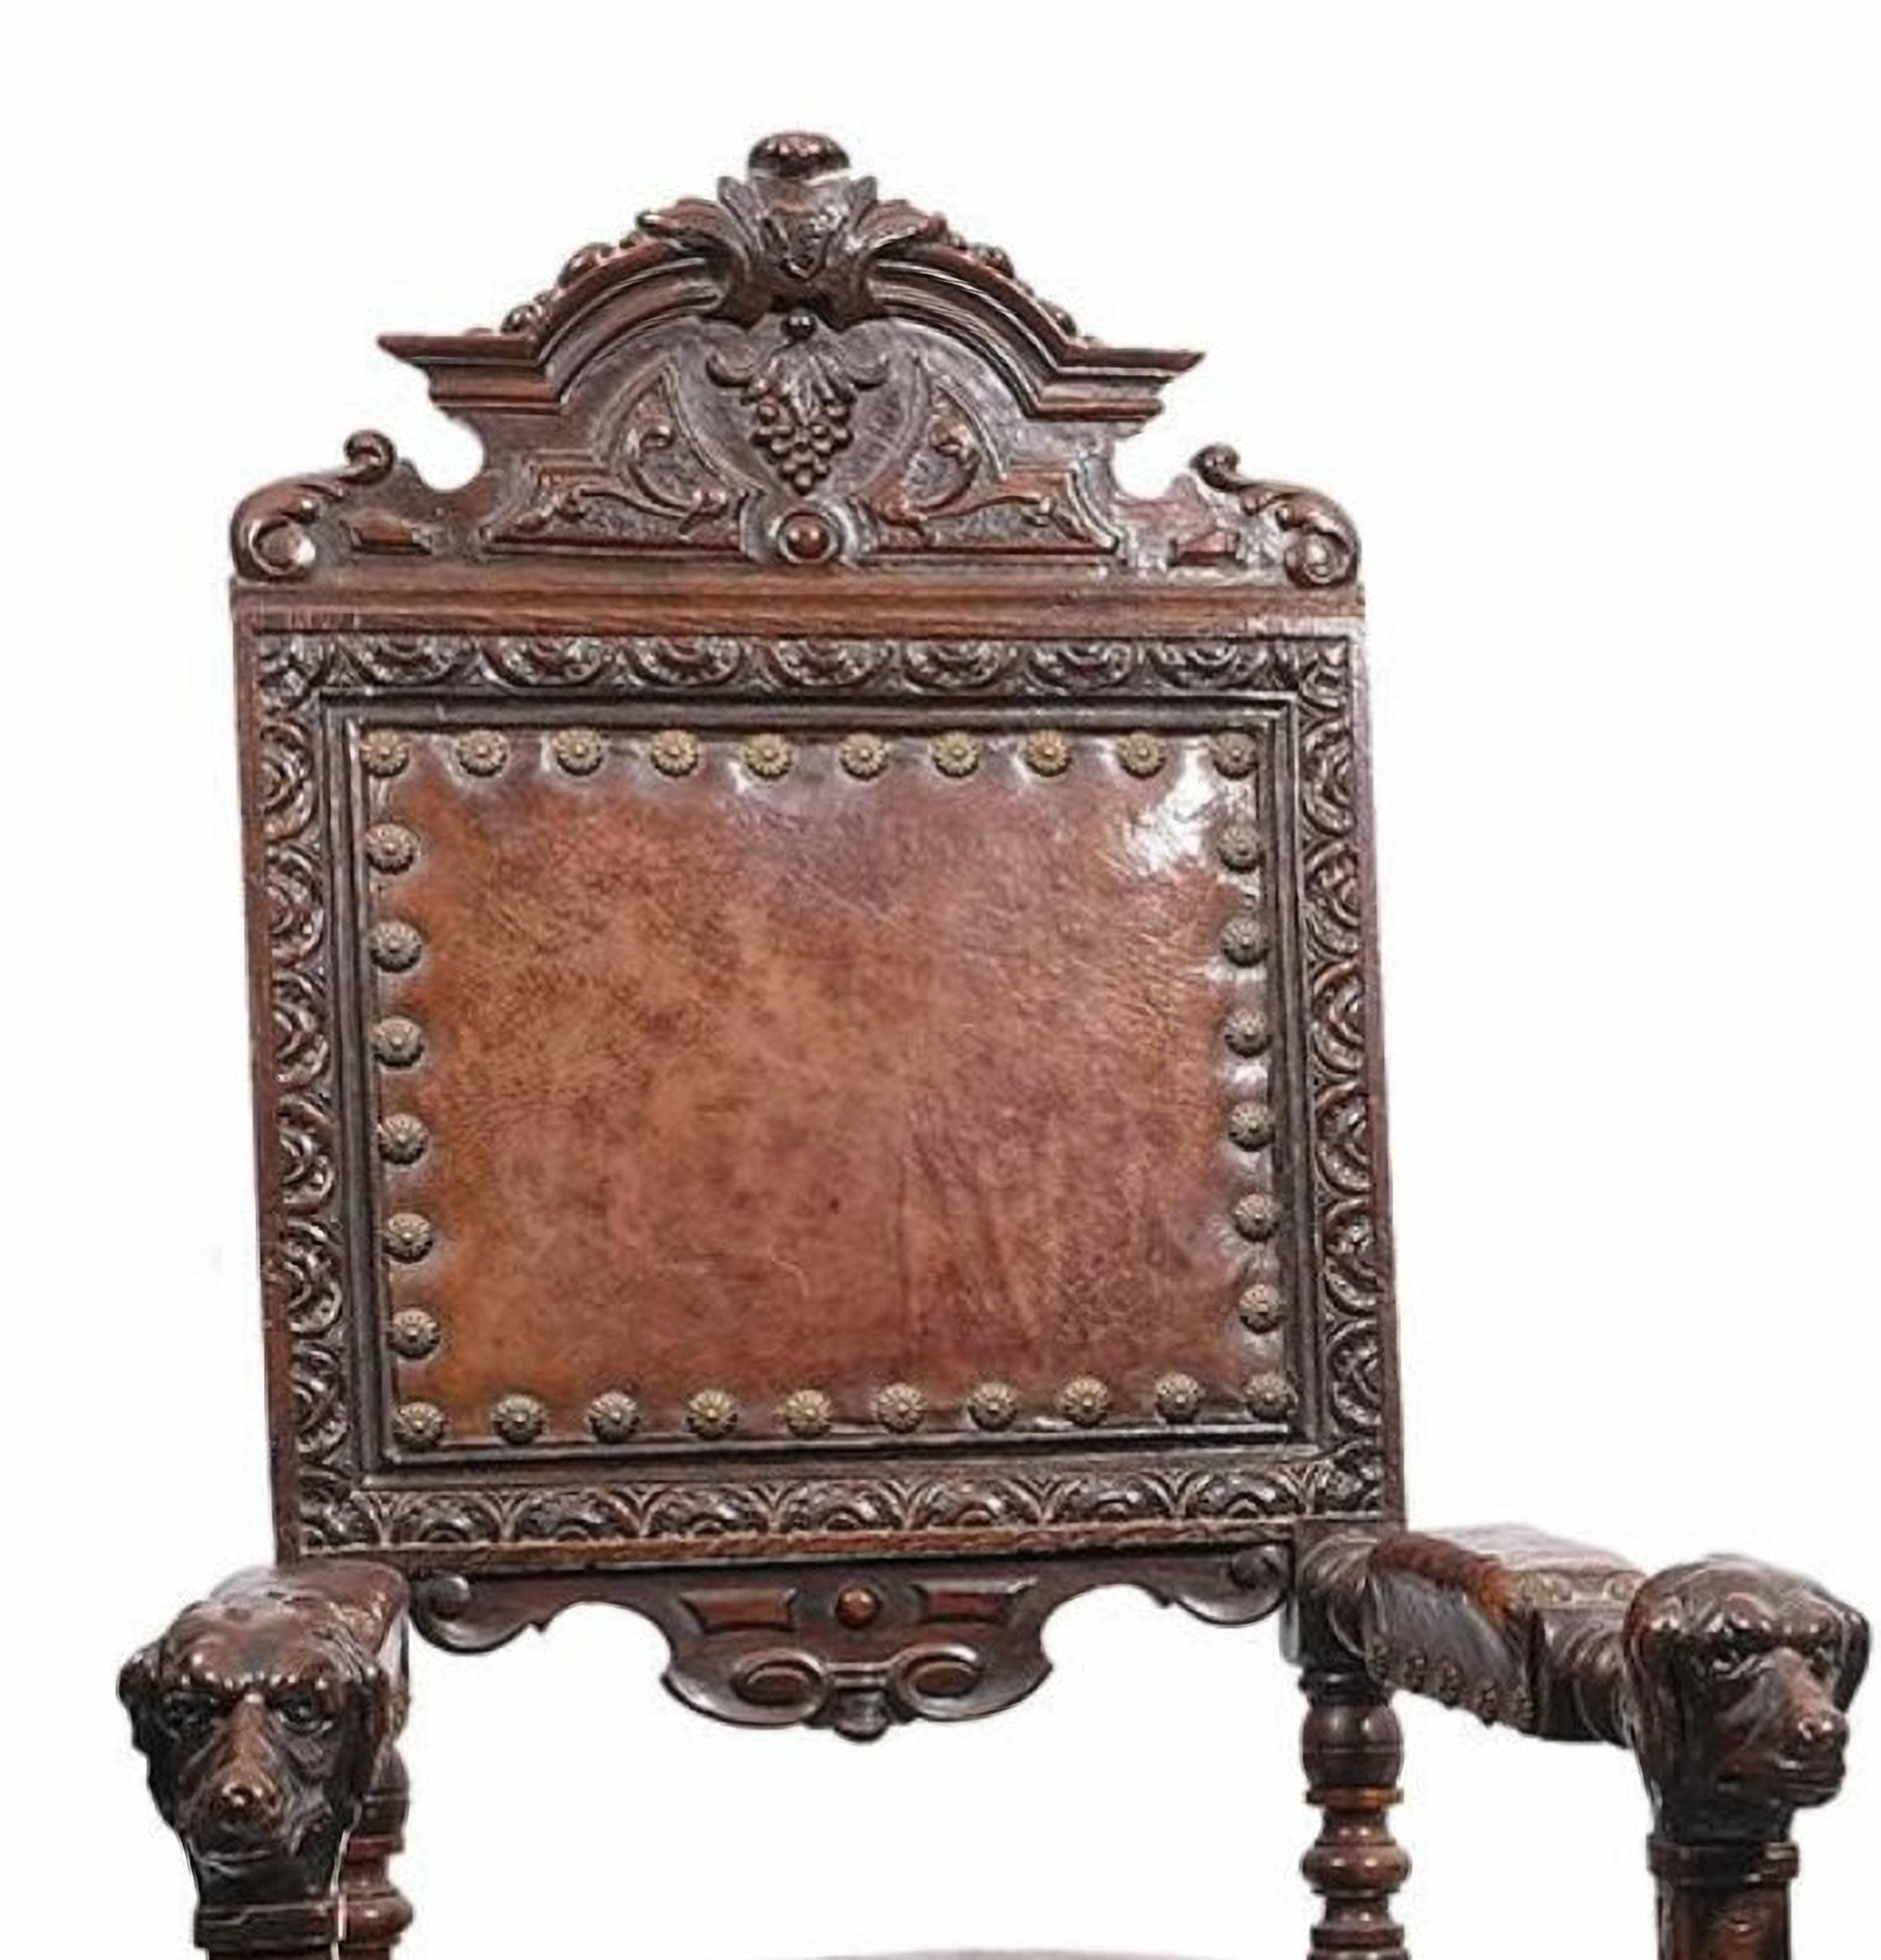 Paire de fauteuils de style Renaissance en bois sculpté avec revêtement en cuir et garniture de clous en bronze. 
Bras terminés en forme de chien. 
19ème siècle

Mesures : 124 x 62 x 62 cm
très bon état